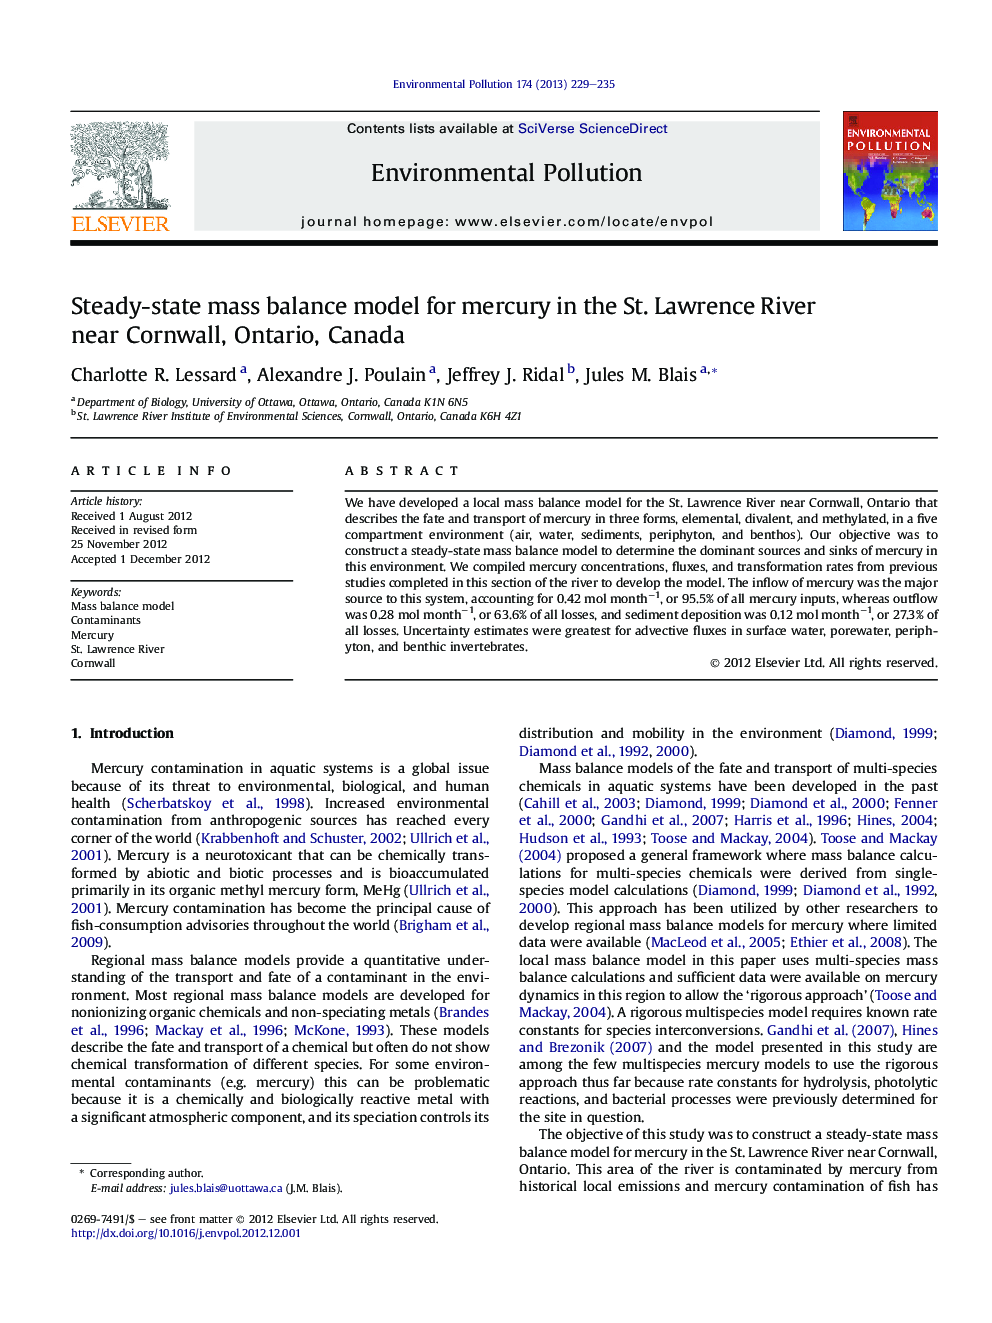 مدل تعادل جرمی حالت پایدار برای جیوه در رودخانه سنت لارنس در نزدیکی کورنوال، انتاریو، کانادا 